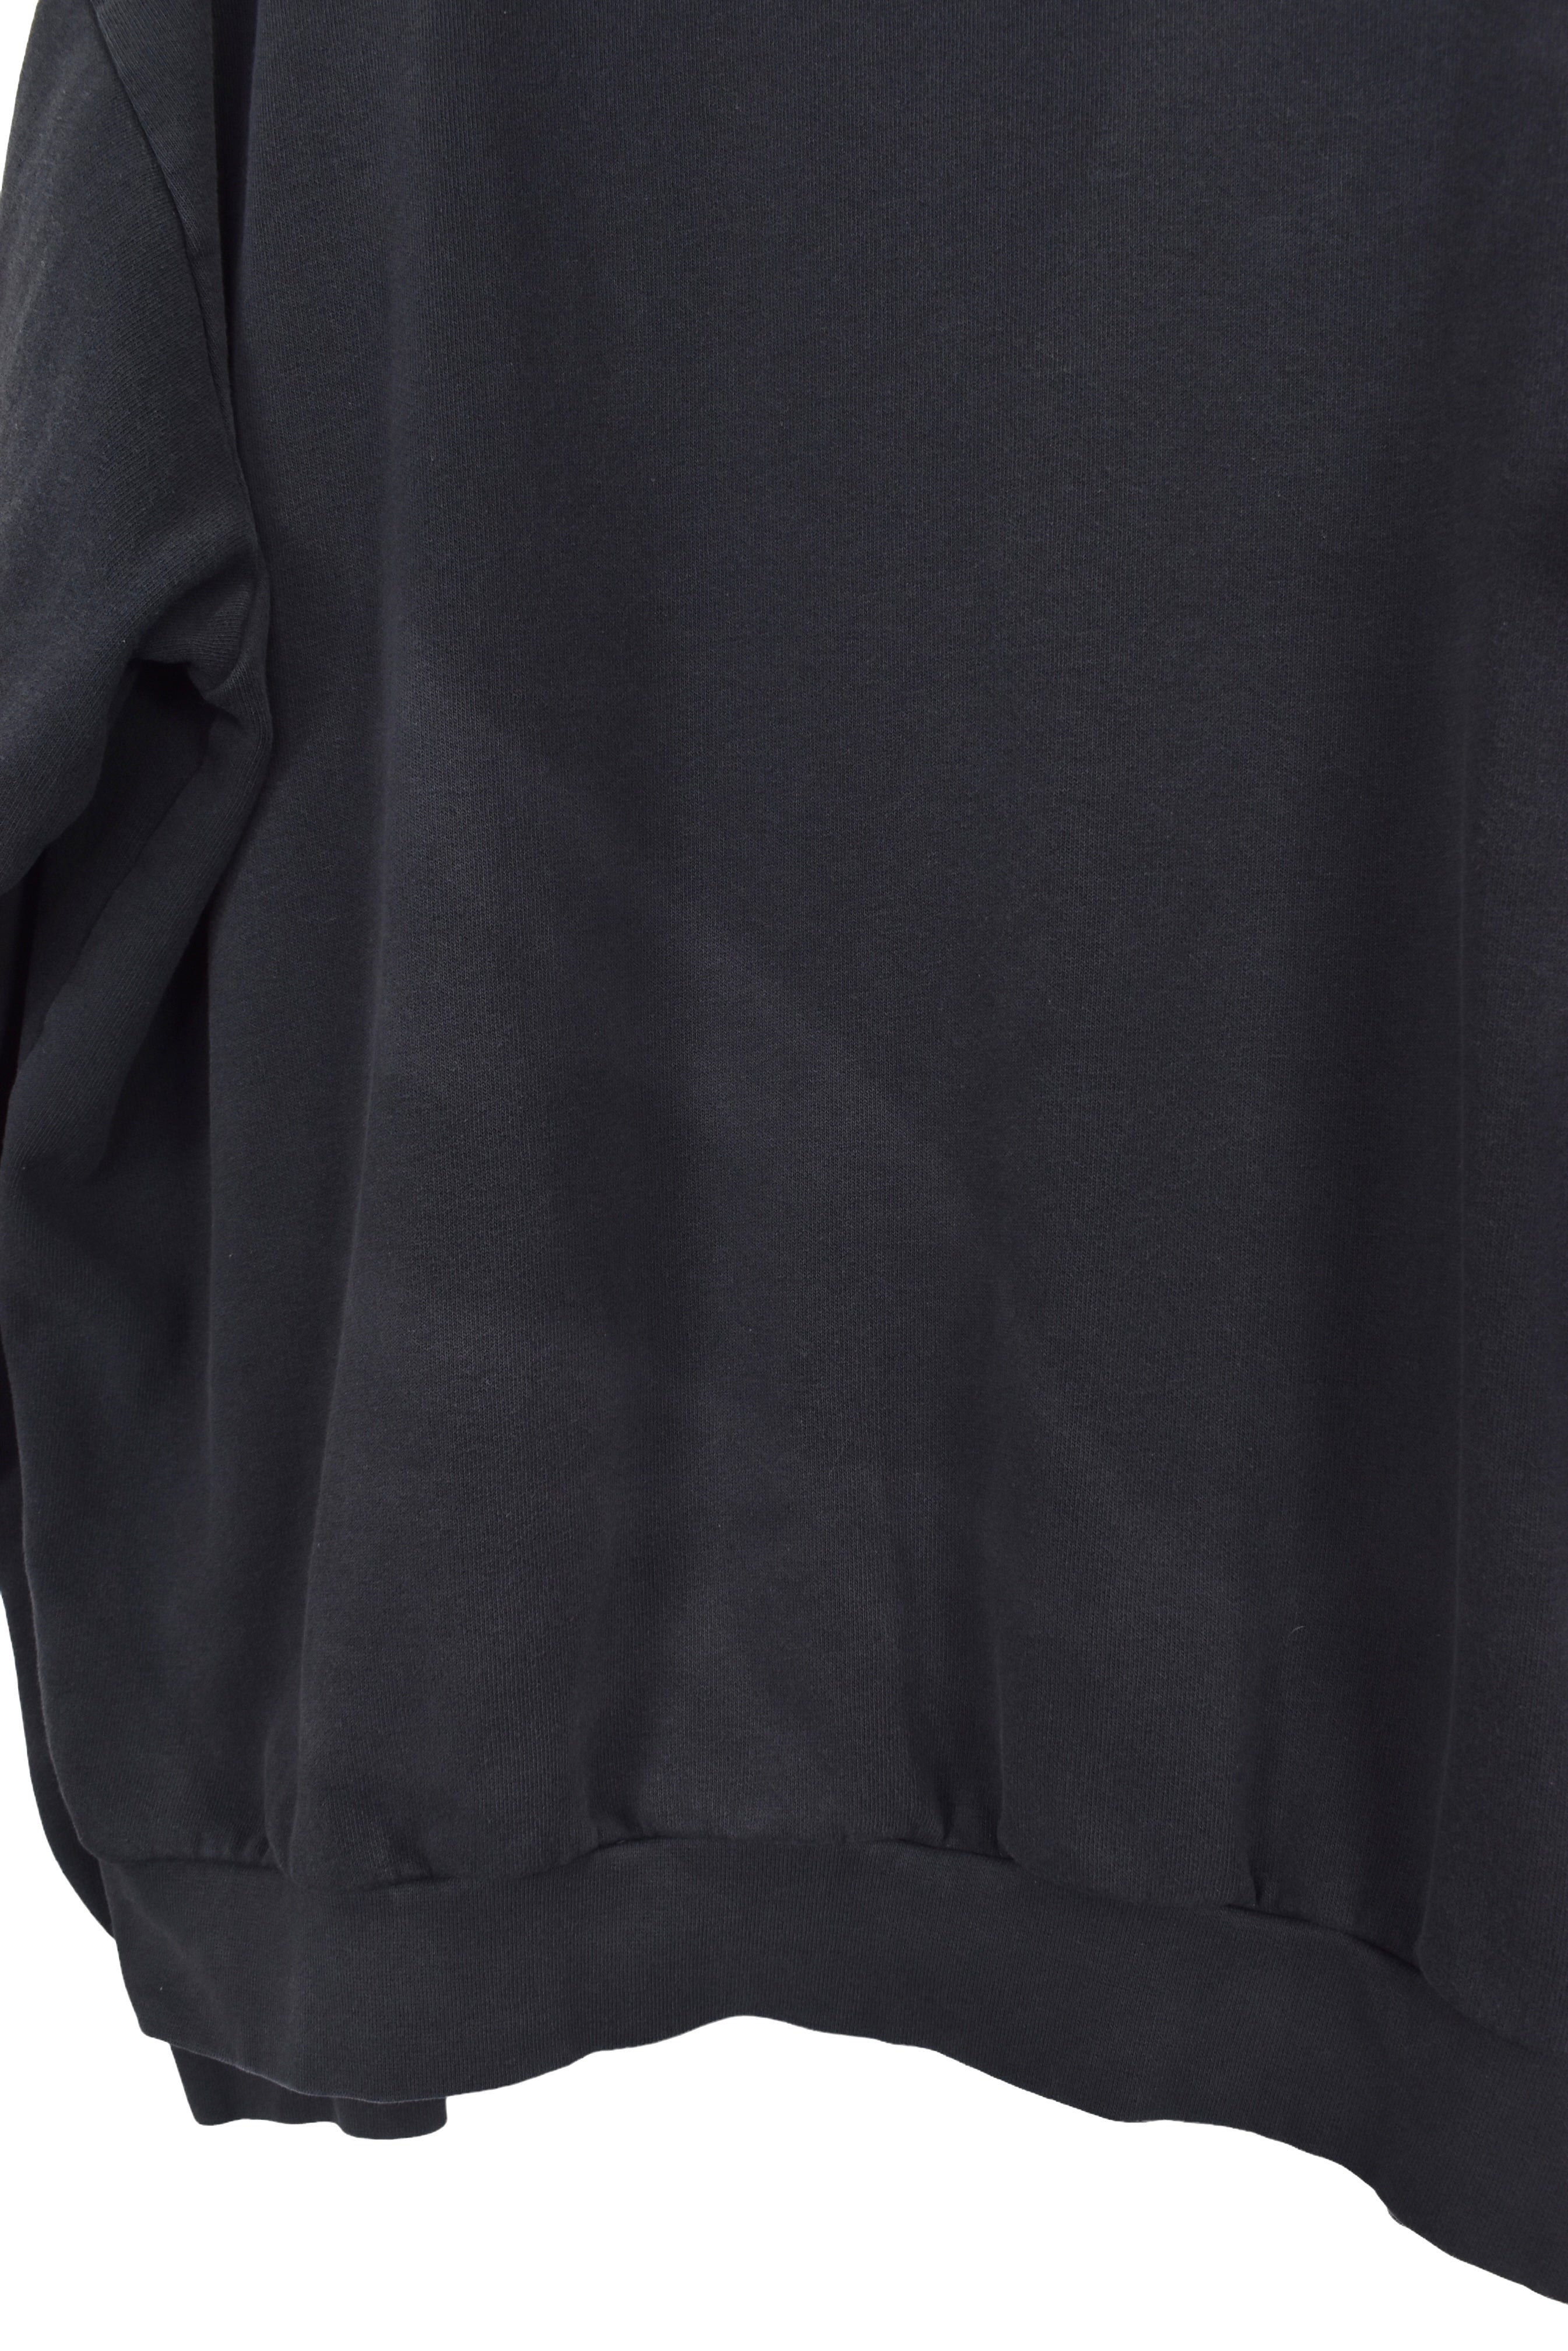 Vintage Nike Air hoodie, black embroidered sweatshirt - XXL